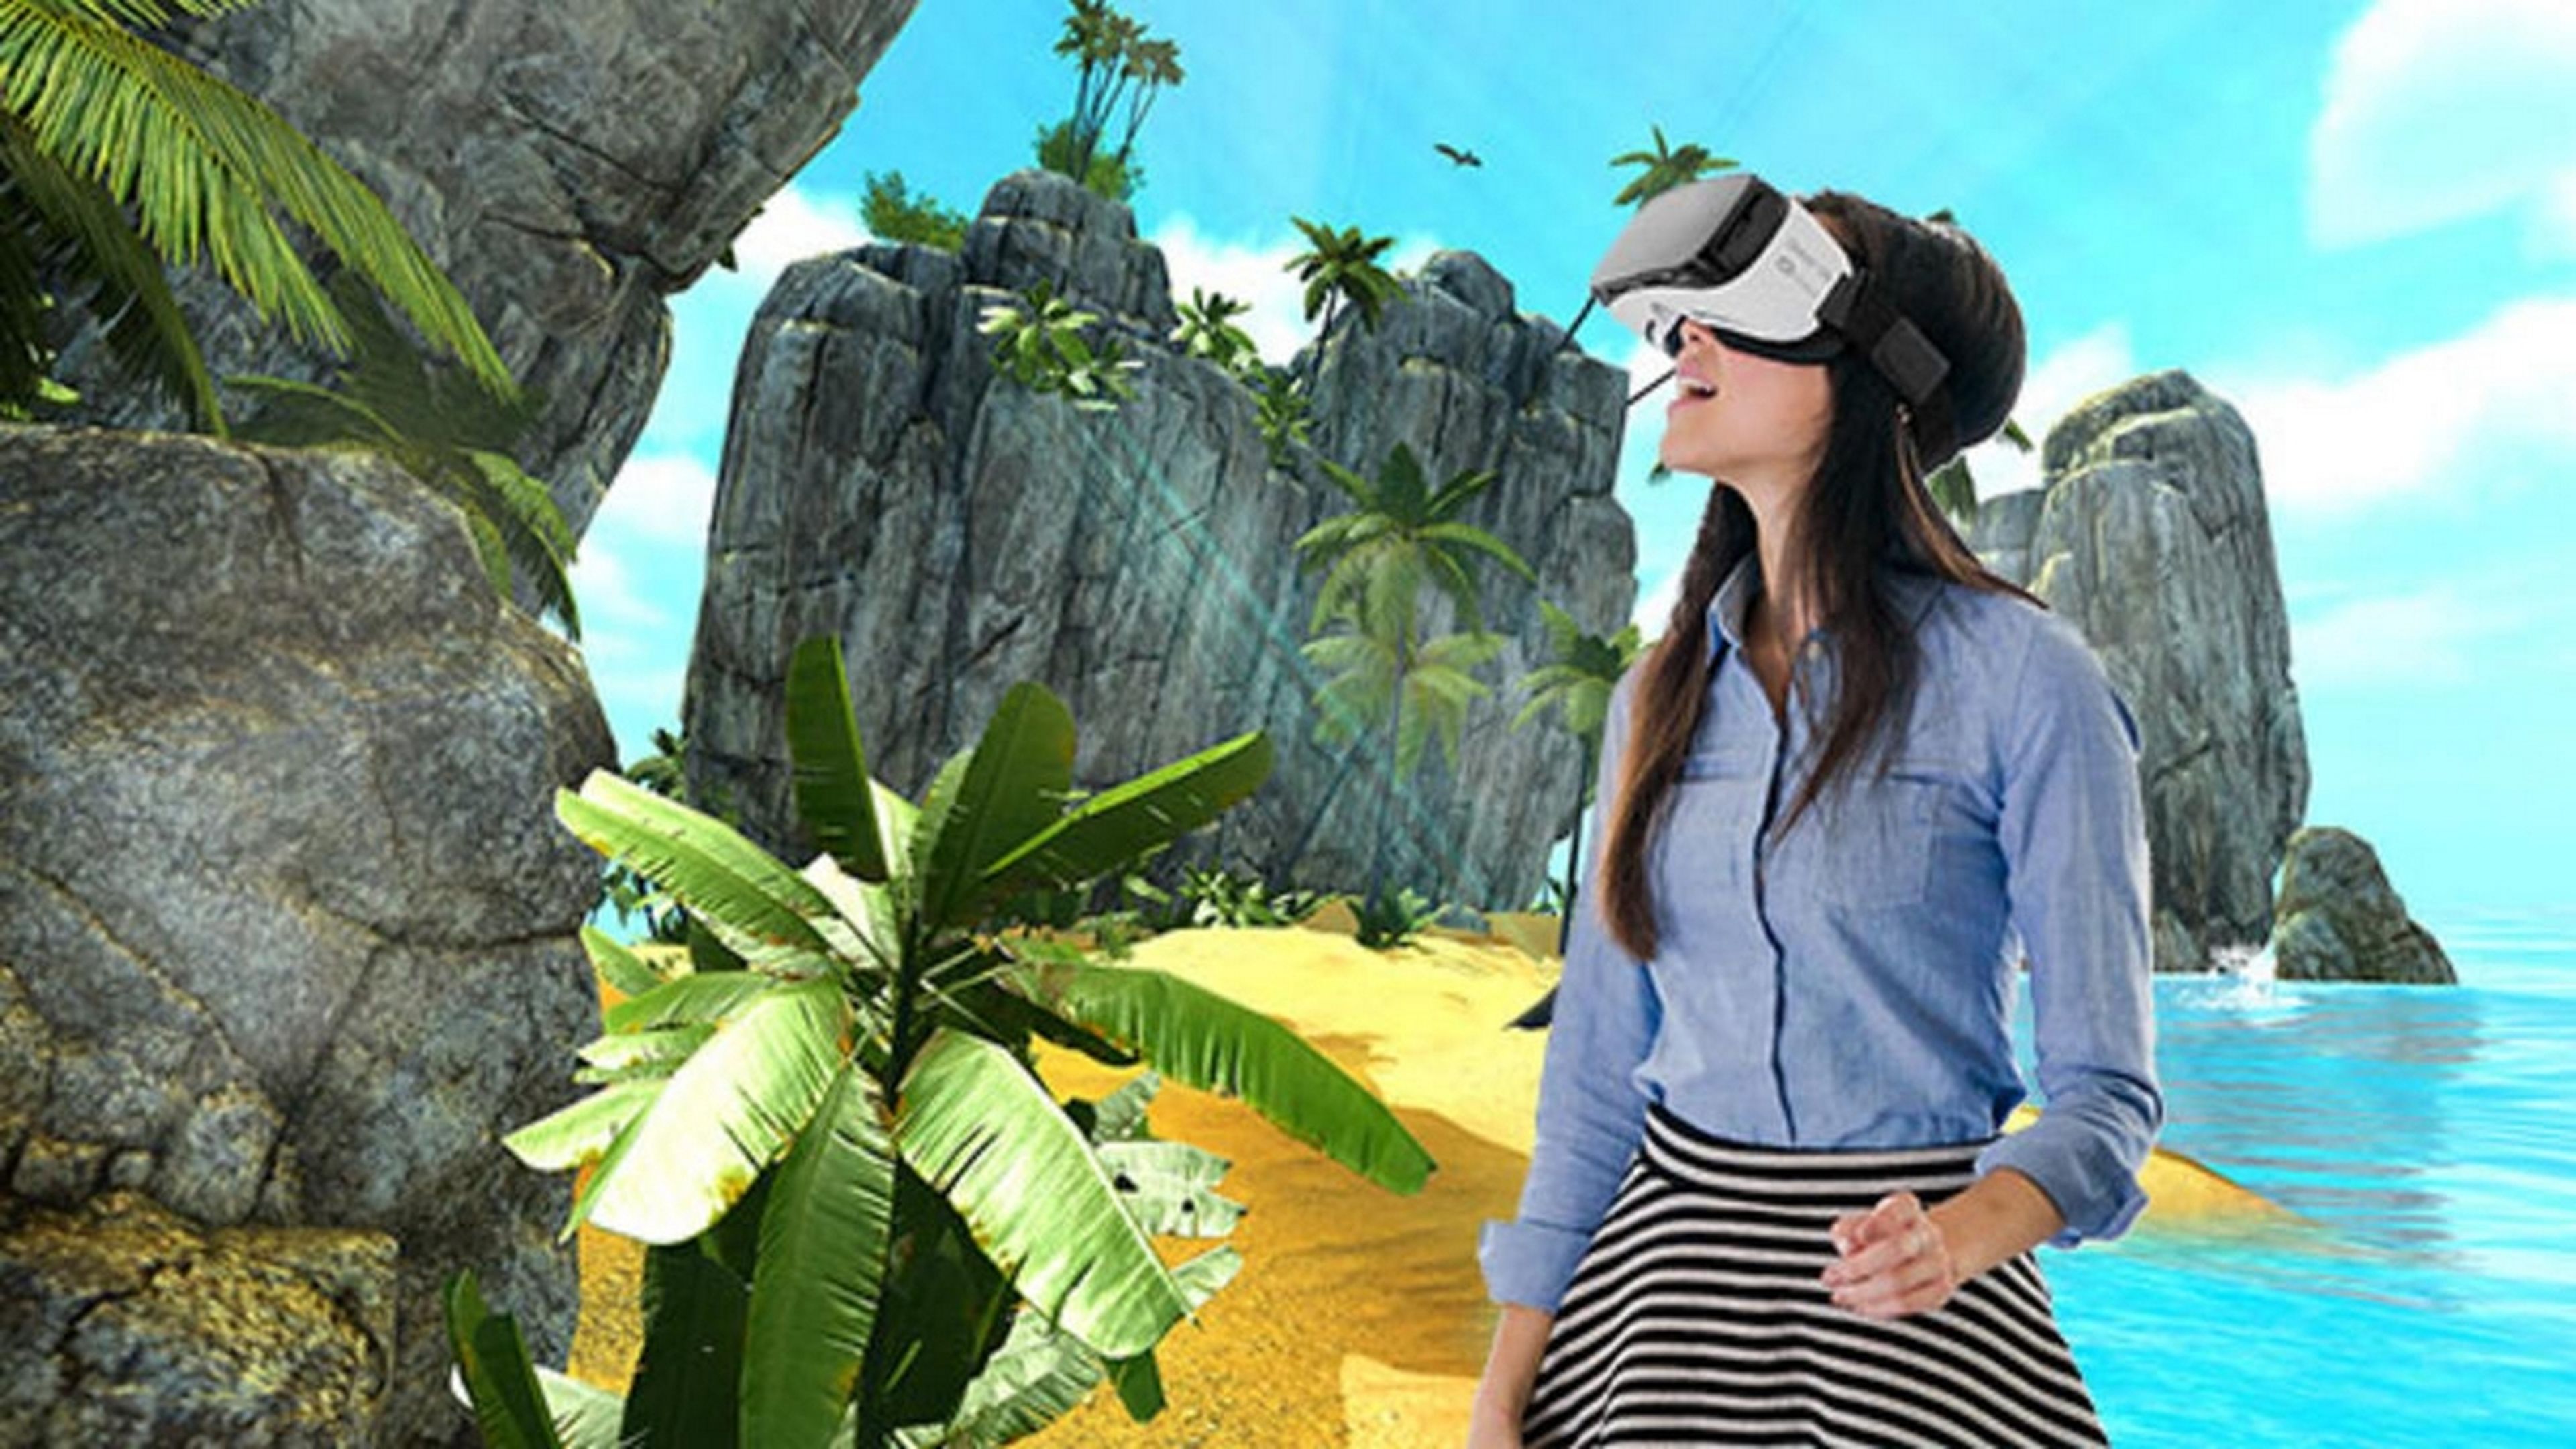 10 experiencias de realidad virtual para evadirte y relajarte estos días